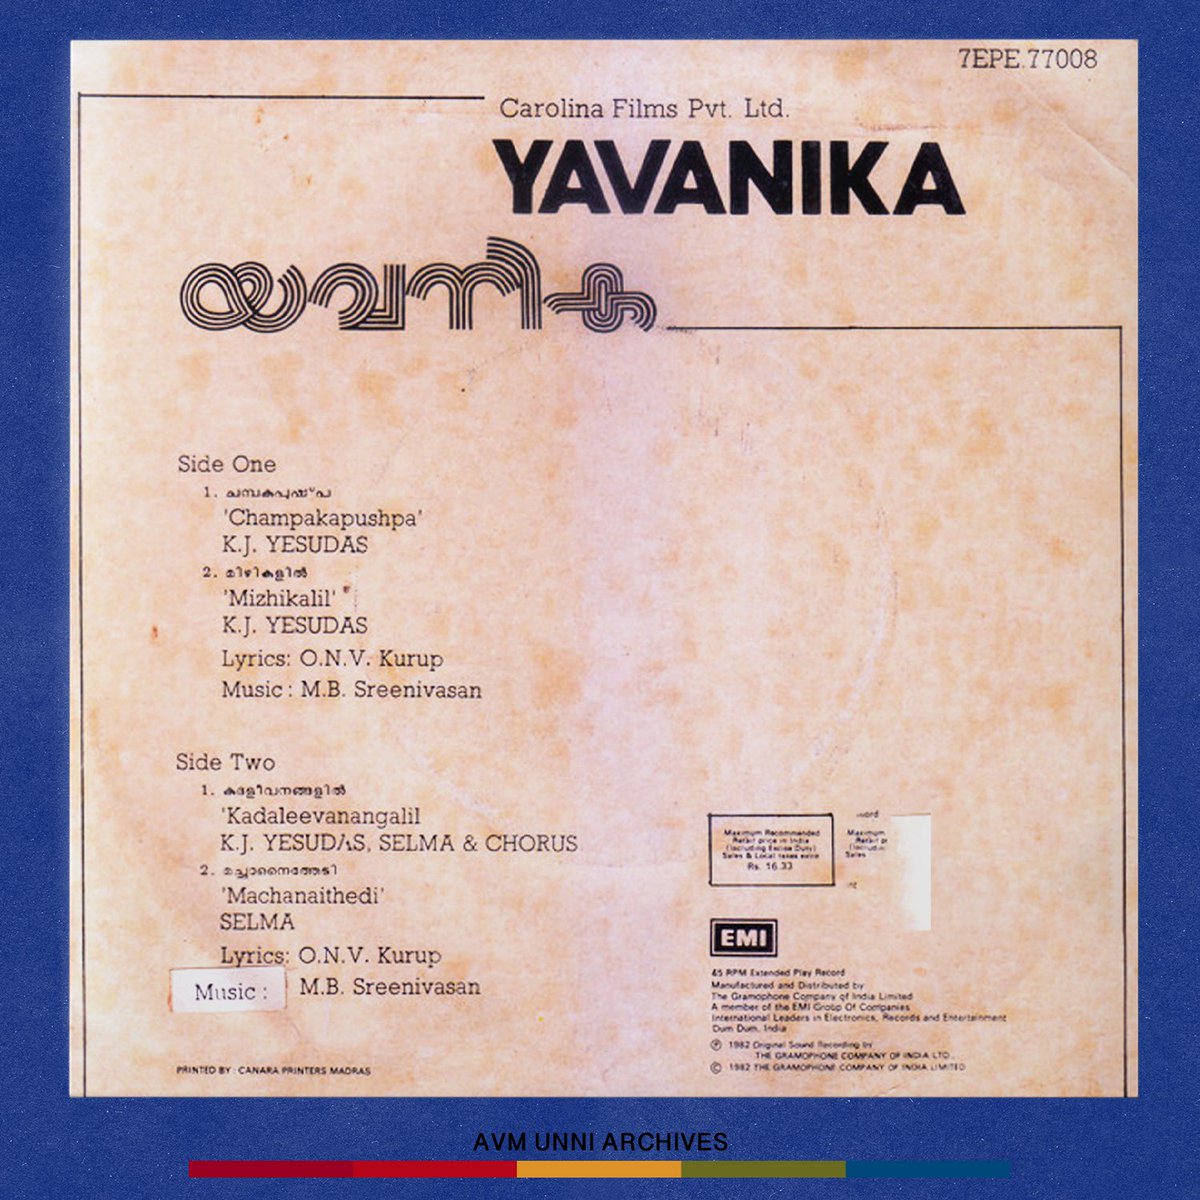 യവനിക / Yavanika / April 1982 

#yavanika #kggeorge #mammootty #gopi #nedumudivenu #thilakan #avmunniarchives #vinylrecords #jalaja #jagathy